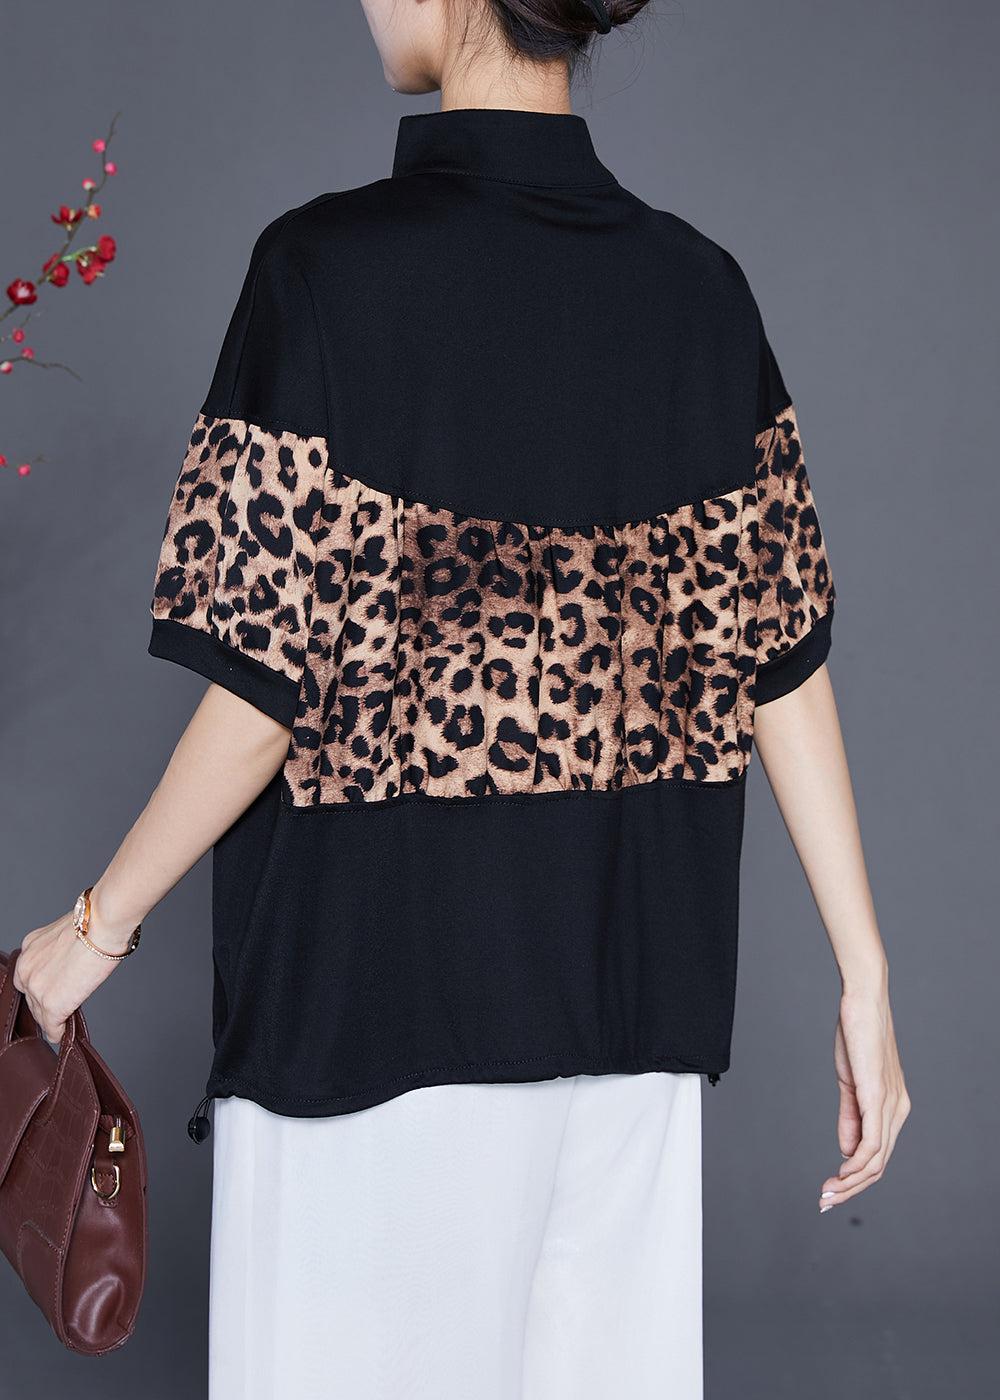 Black Patchwork Leopard Cotton Sweatshirts Top Drawstring Summer